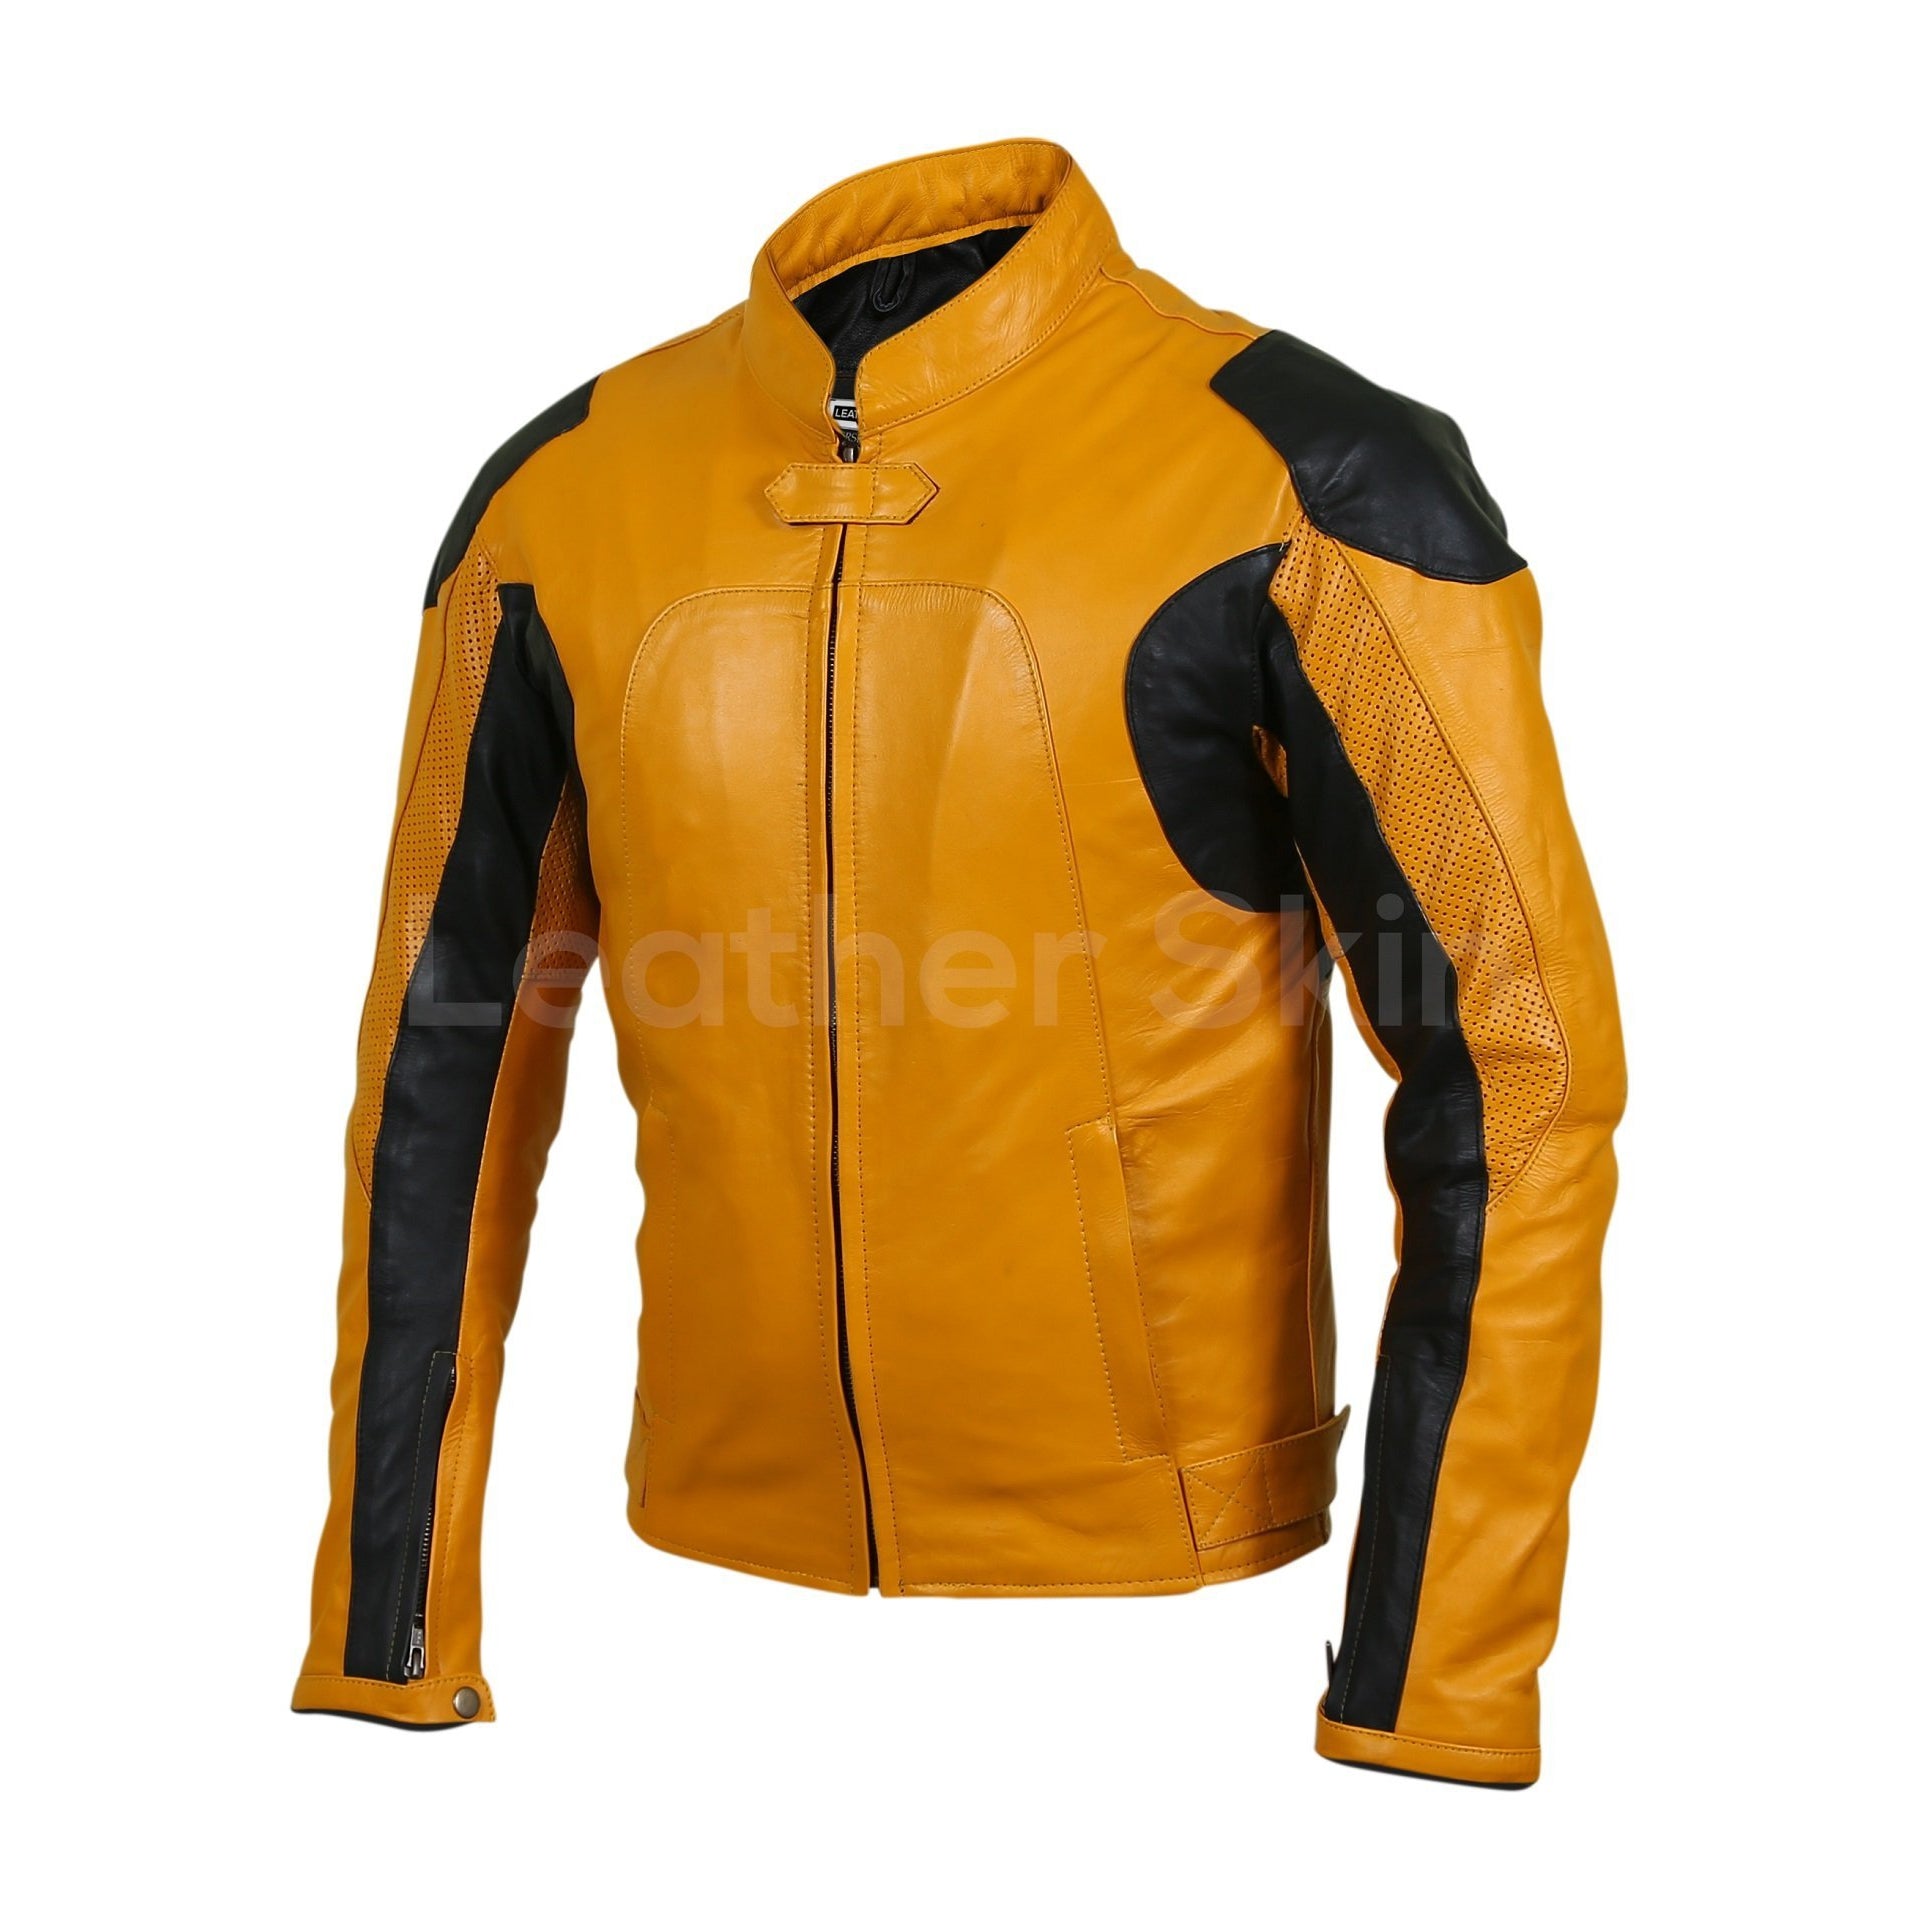 leather jacket yellow